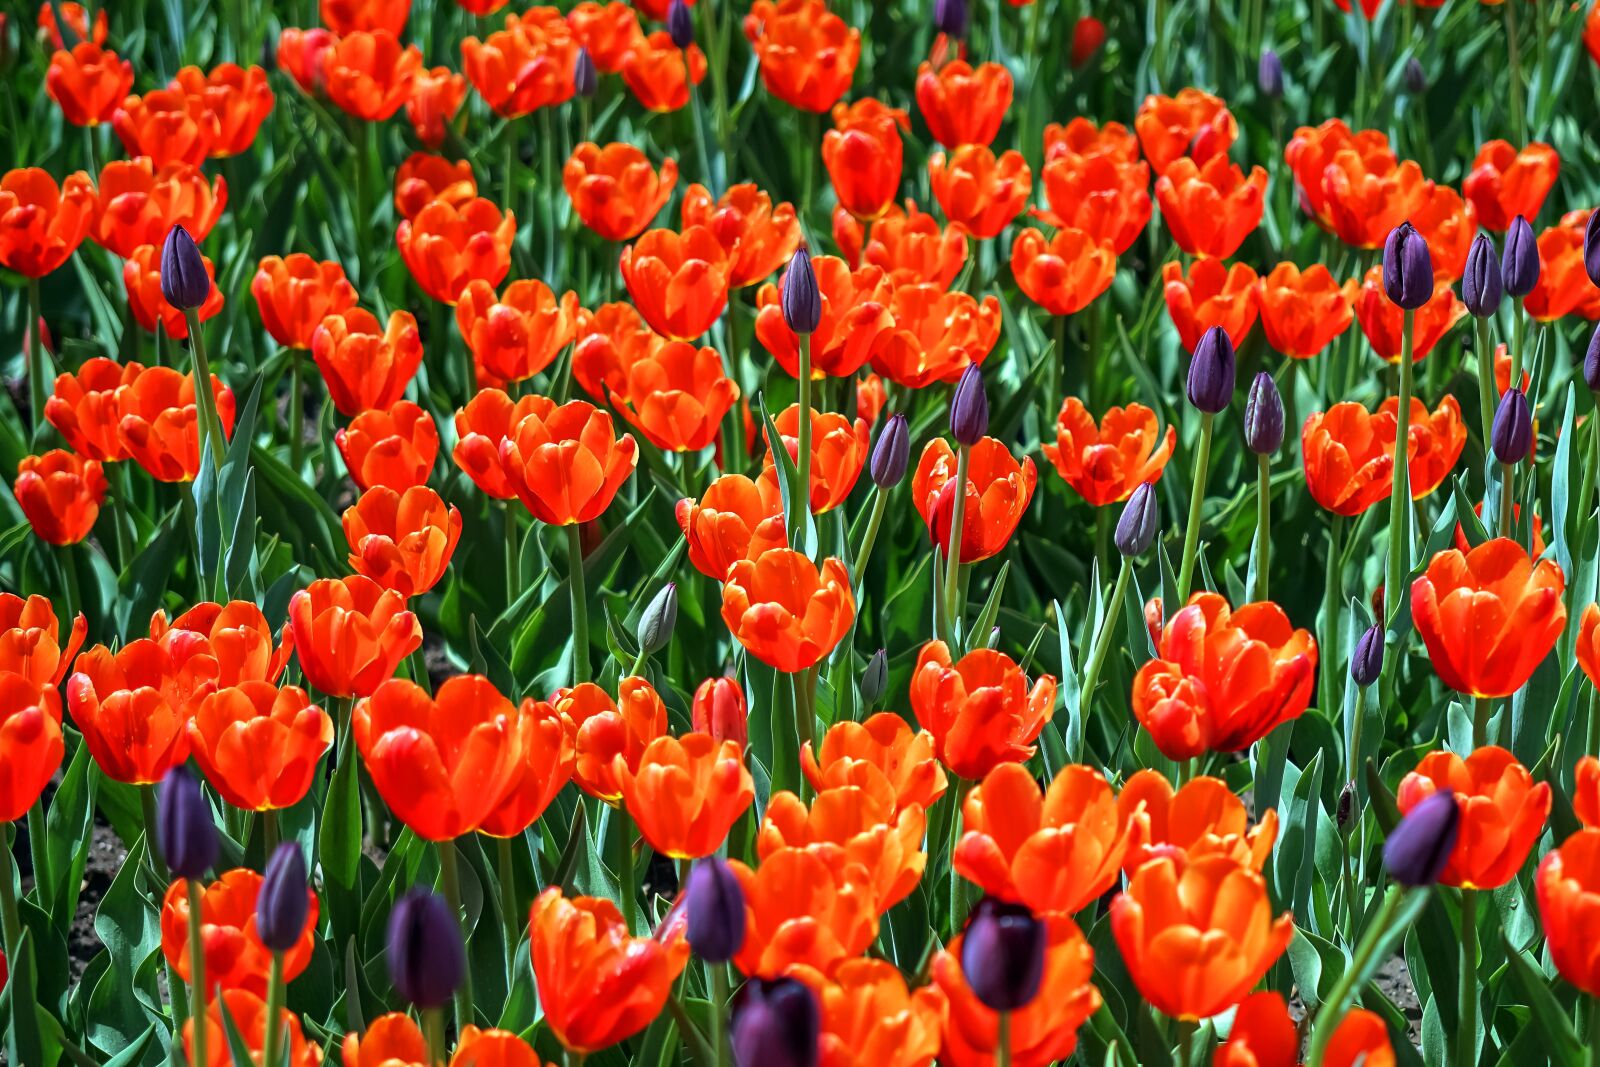 Sony FE 50mm F2.8 Macro sample photo. Tulips, field, park photography